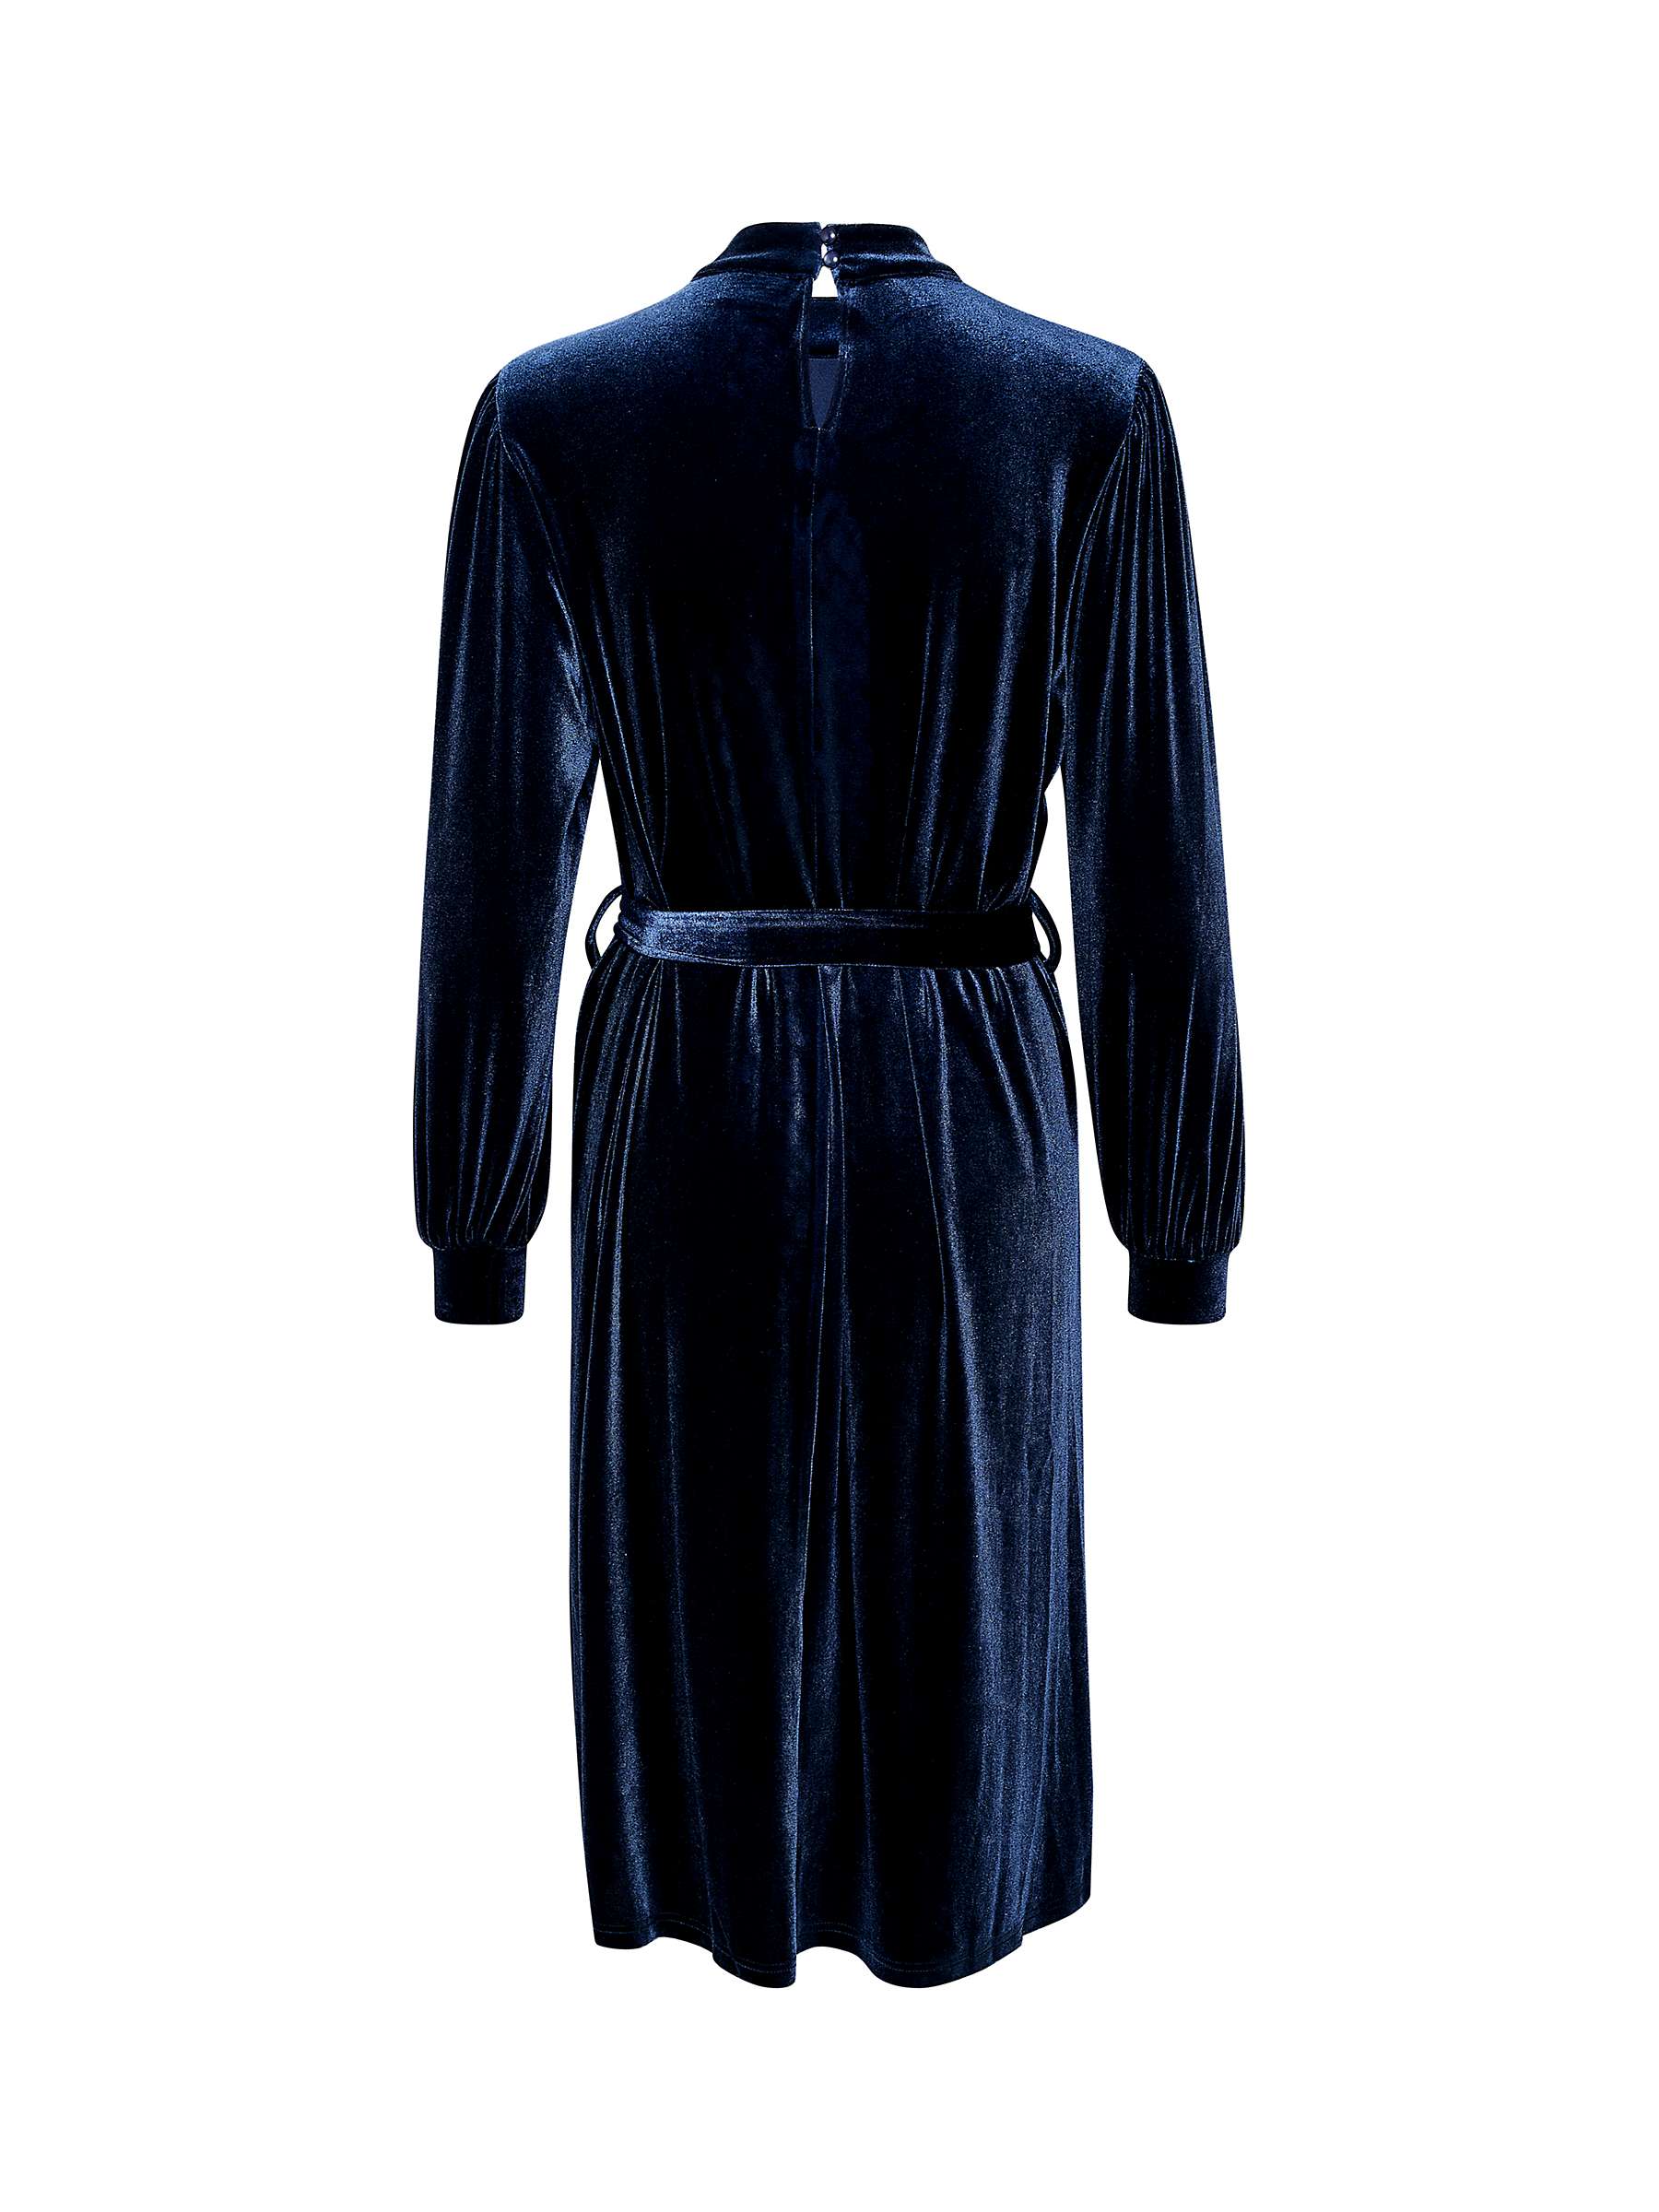 Buy KAFFE Helle Velvet Dress, Midnight Marine Online at johnlewis.com